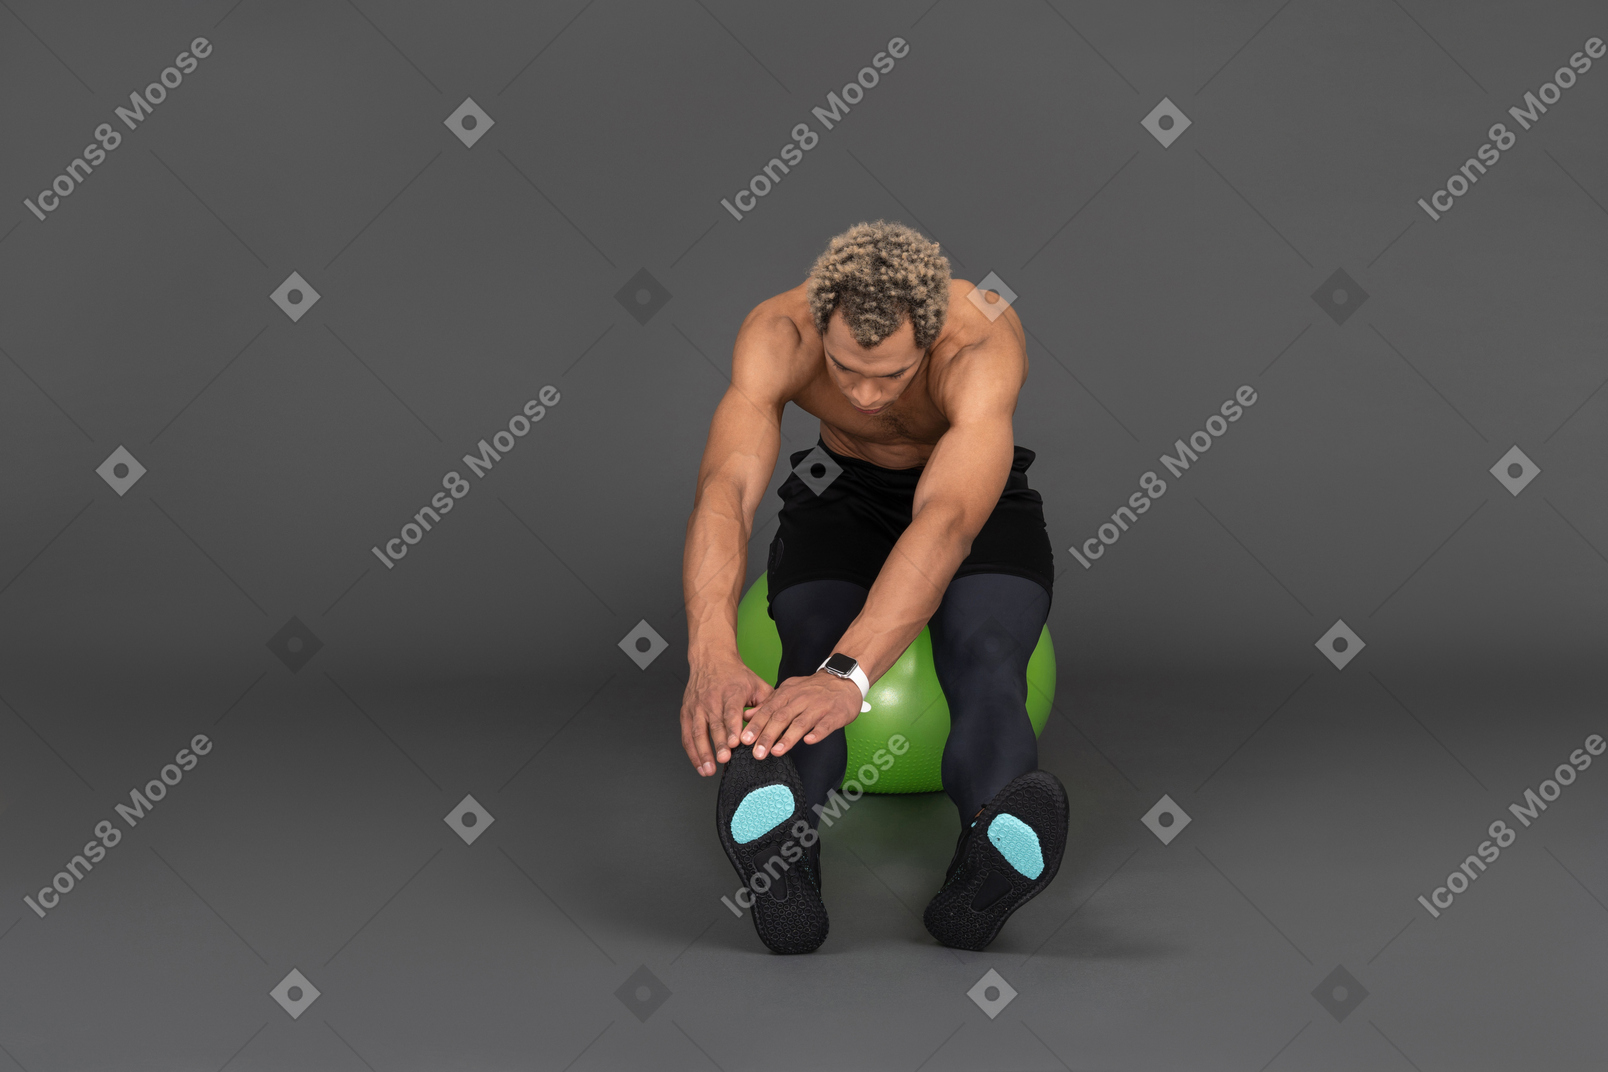 Vue de face d'un homme afro torse nu s'étirant assis sur un ballon de gymnastique vert